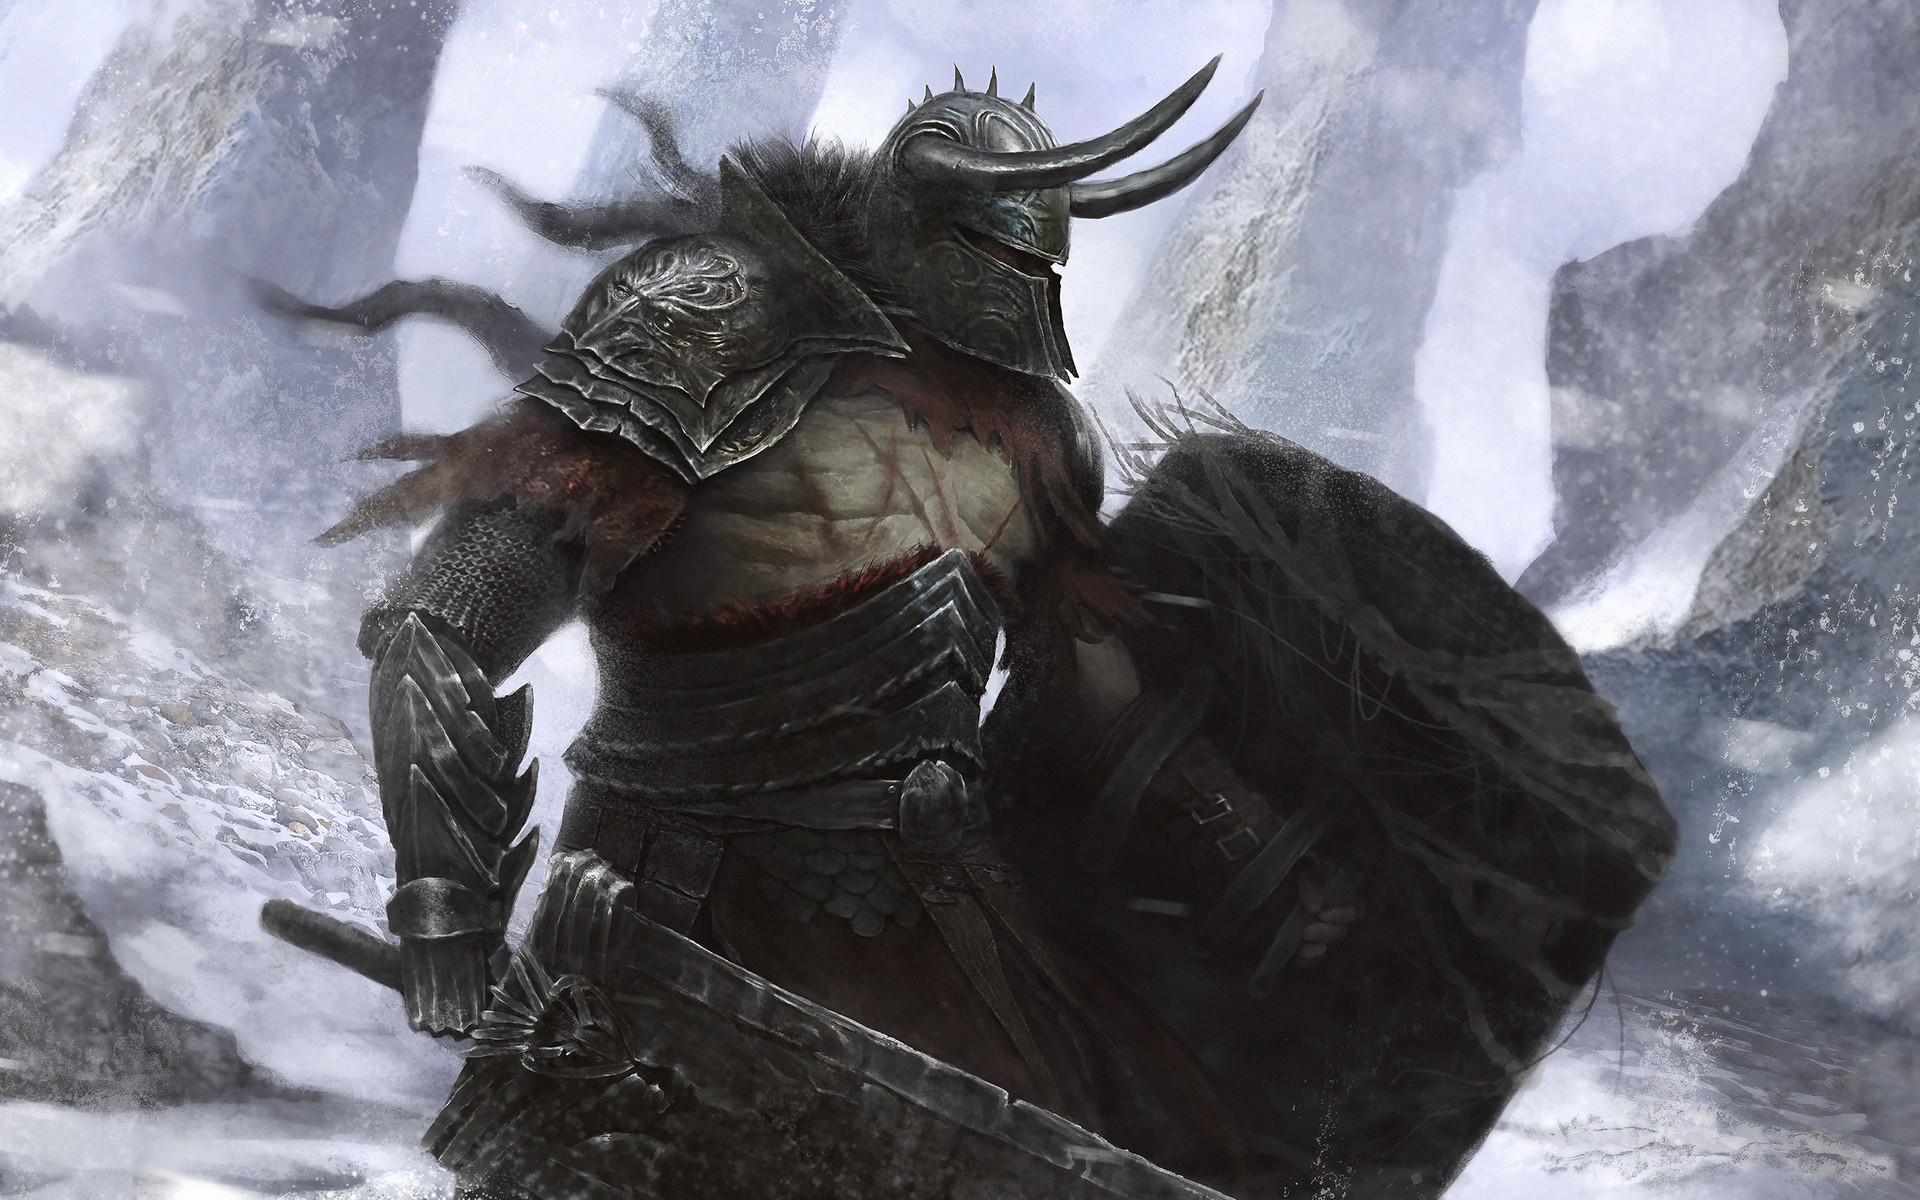 General 1920x1200 warrior digital art horns shield fantasy art armor winter